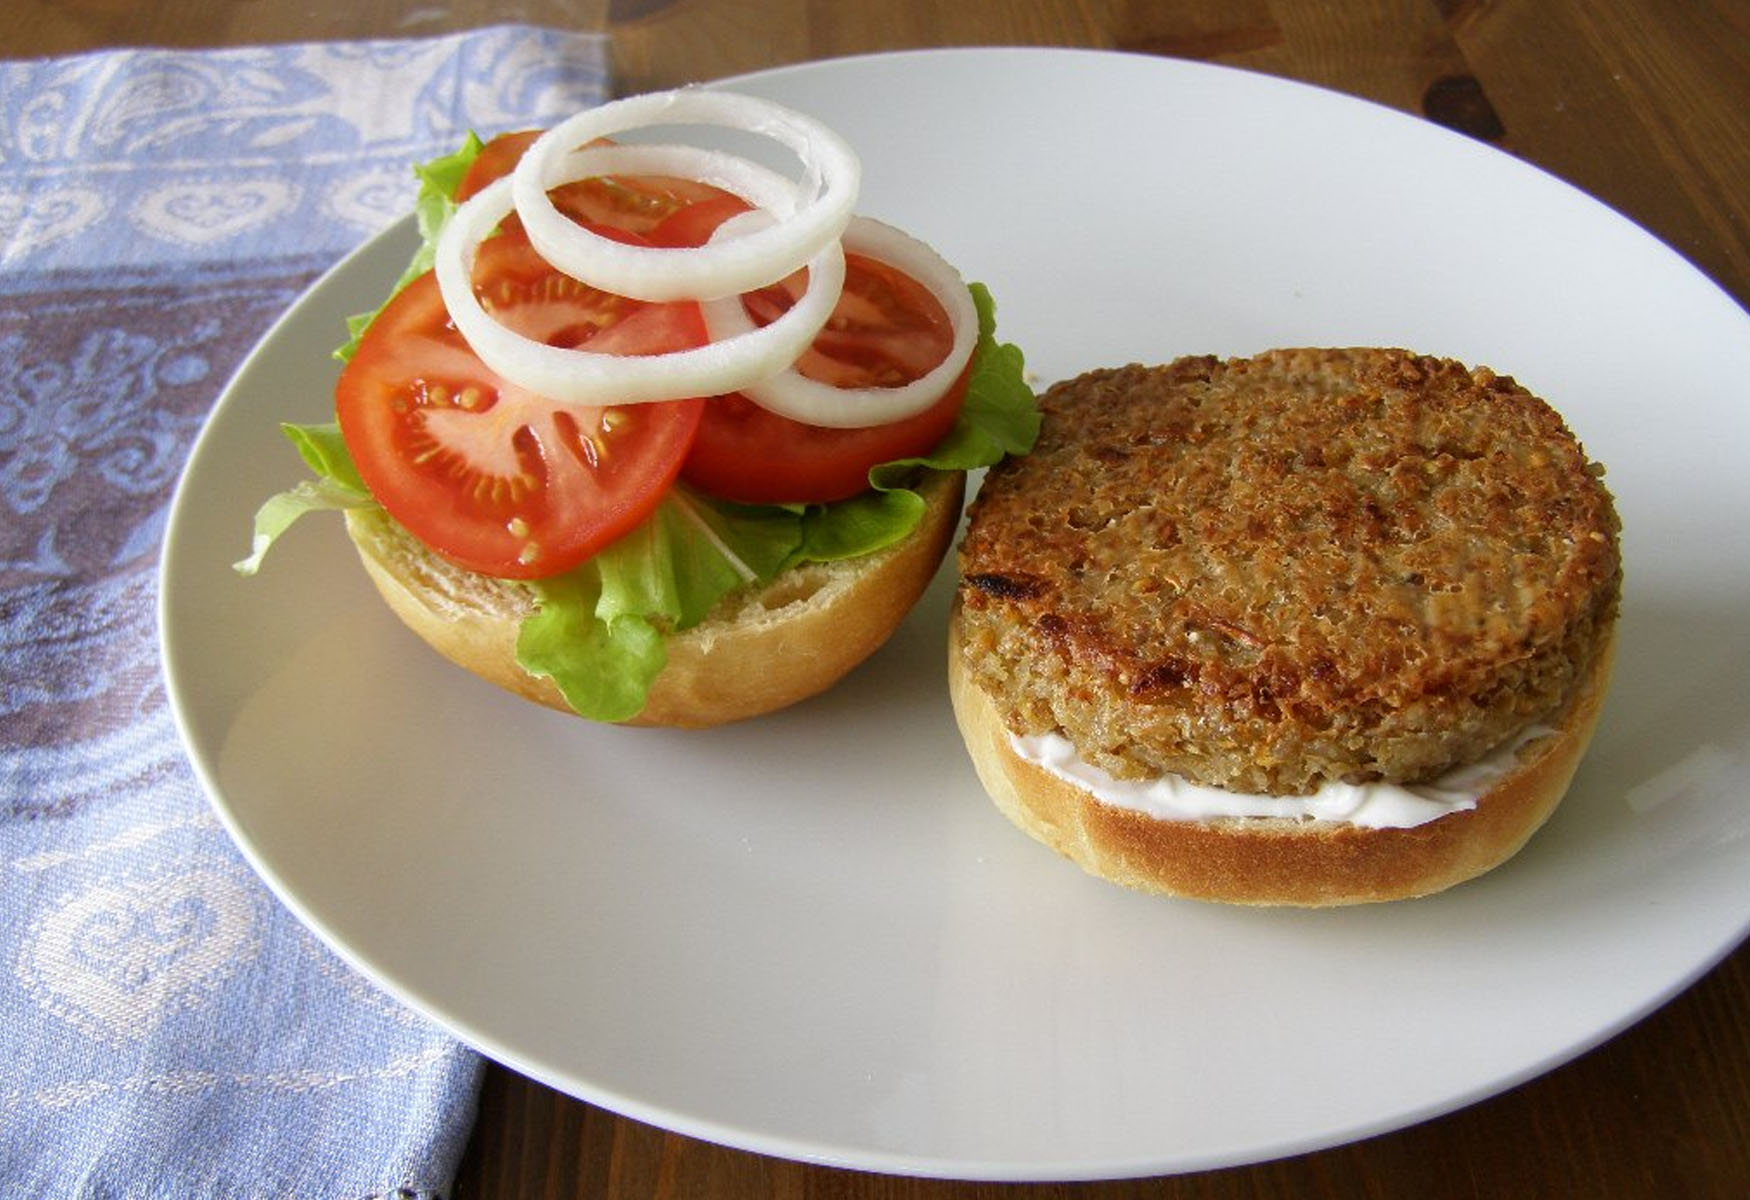 18-garden-burger-nutrition-facts